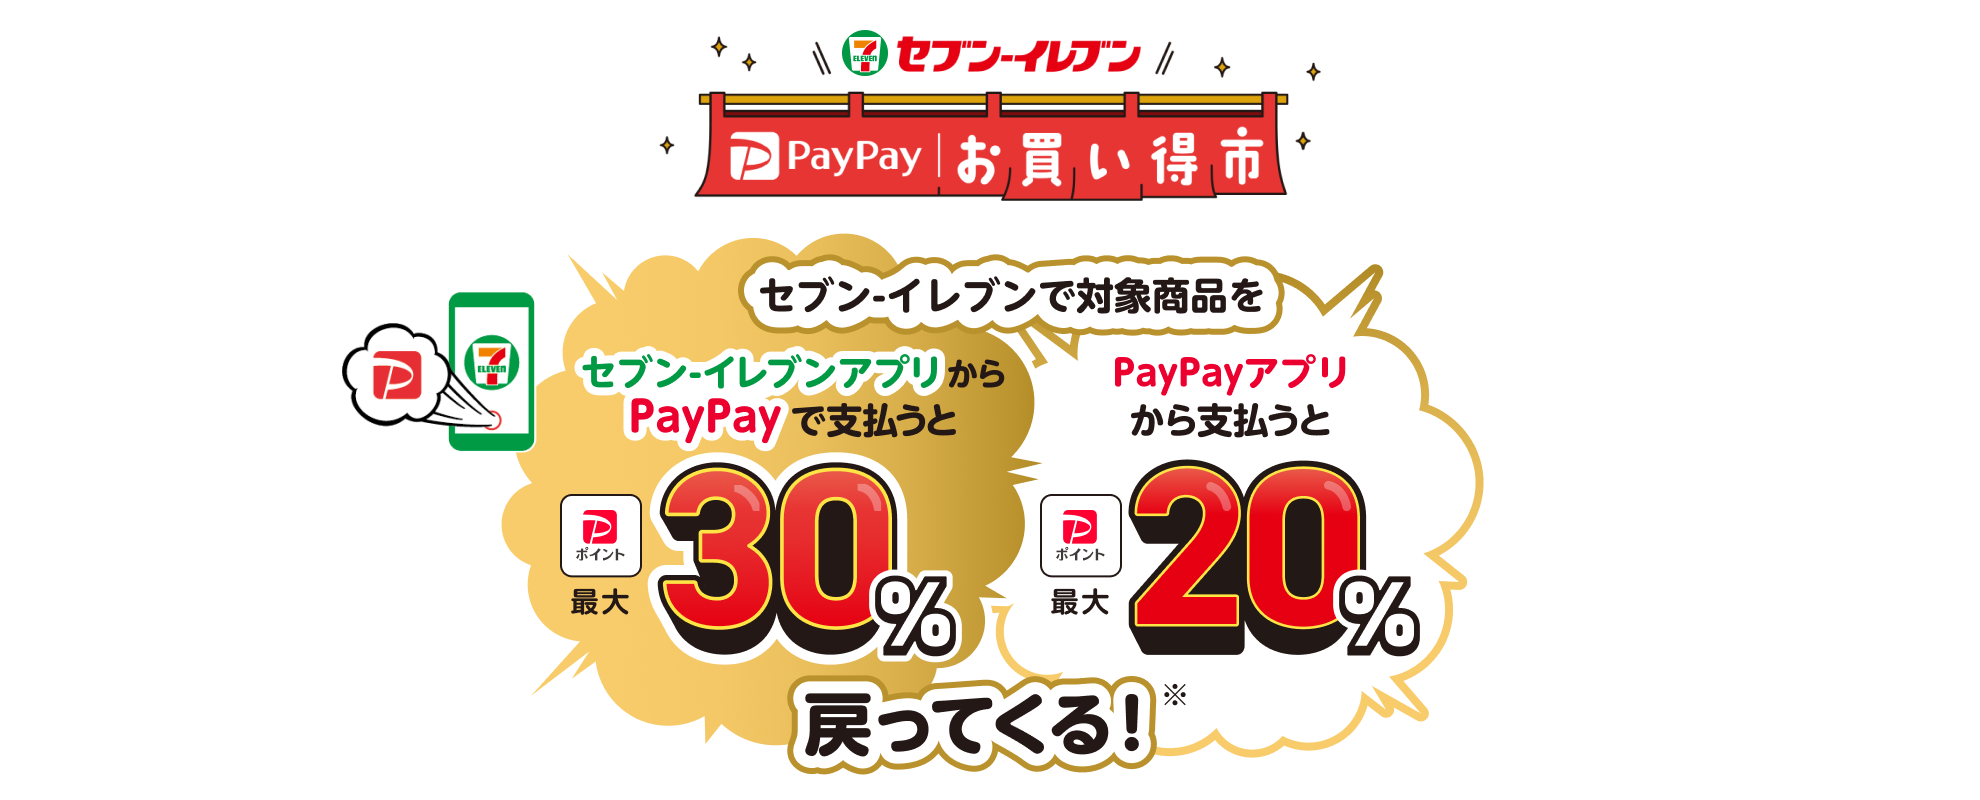 セブン‐イレブンで対象商品をセブン‐イレブンアプリからPayPayで支払うと最大30%、PayPayアプリで支払うと最大20%戻ってくる